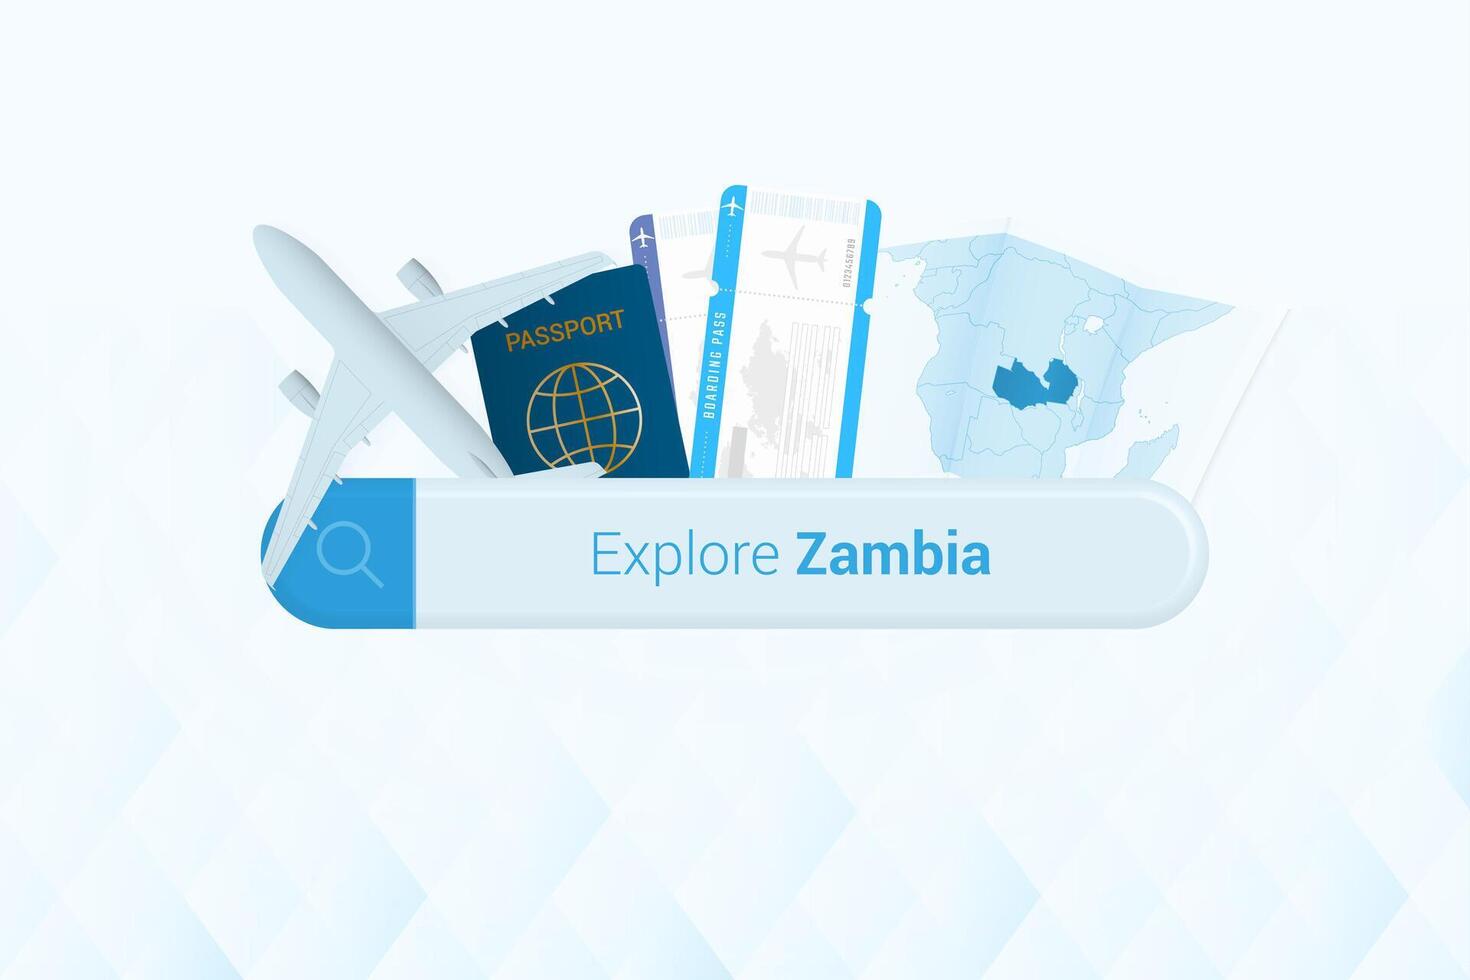 suchen Tickets zu Sambia oder Reise Ziel im Sambia. suchen Bar mit Flugzeug, Reisepass, Einsteigen passieren, Tickets und Karte. vektor